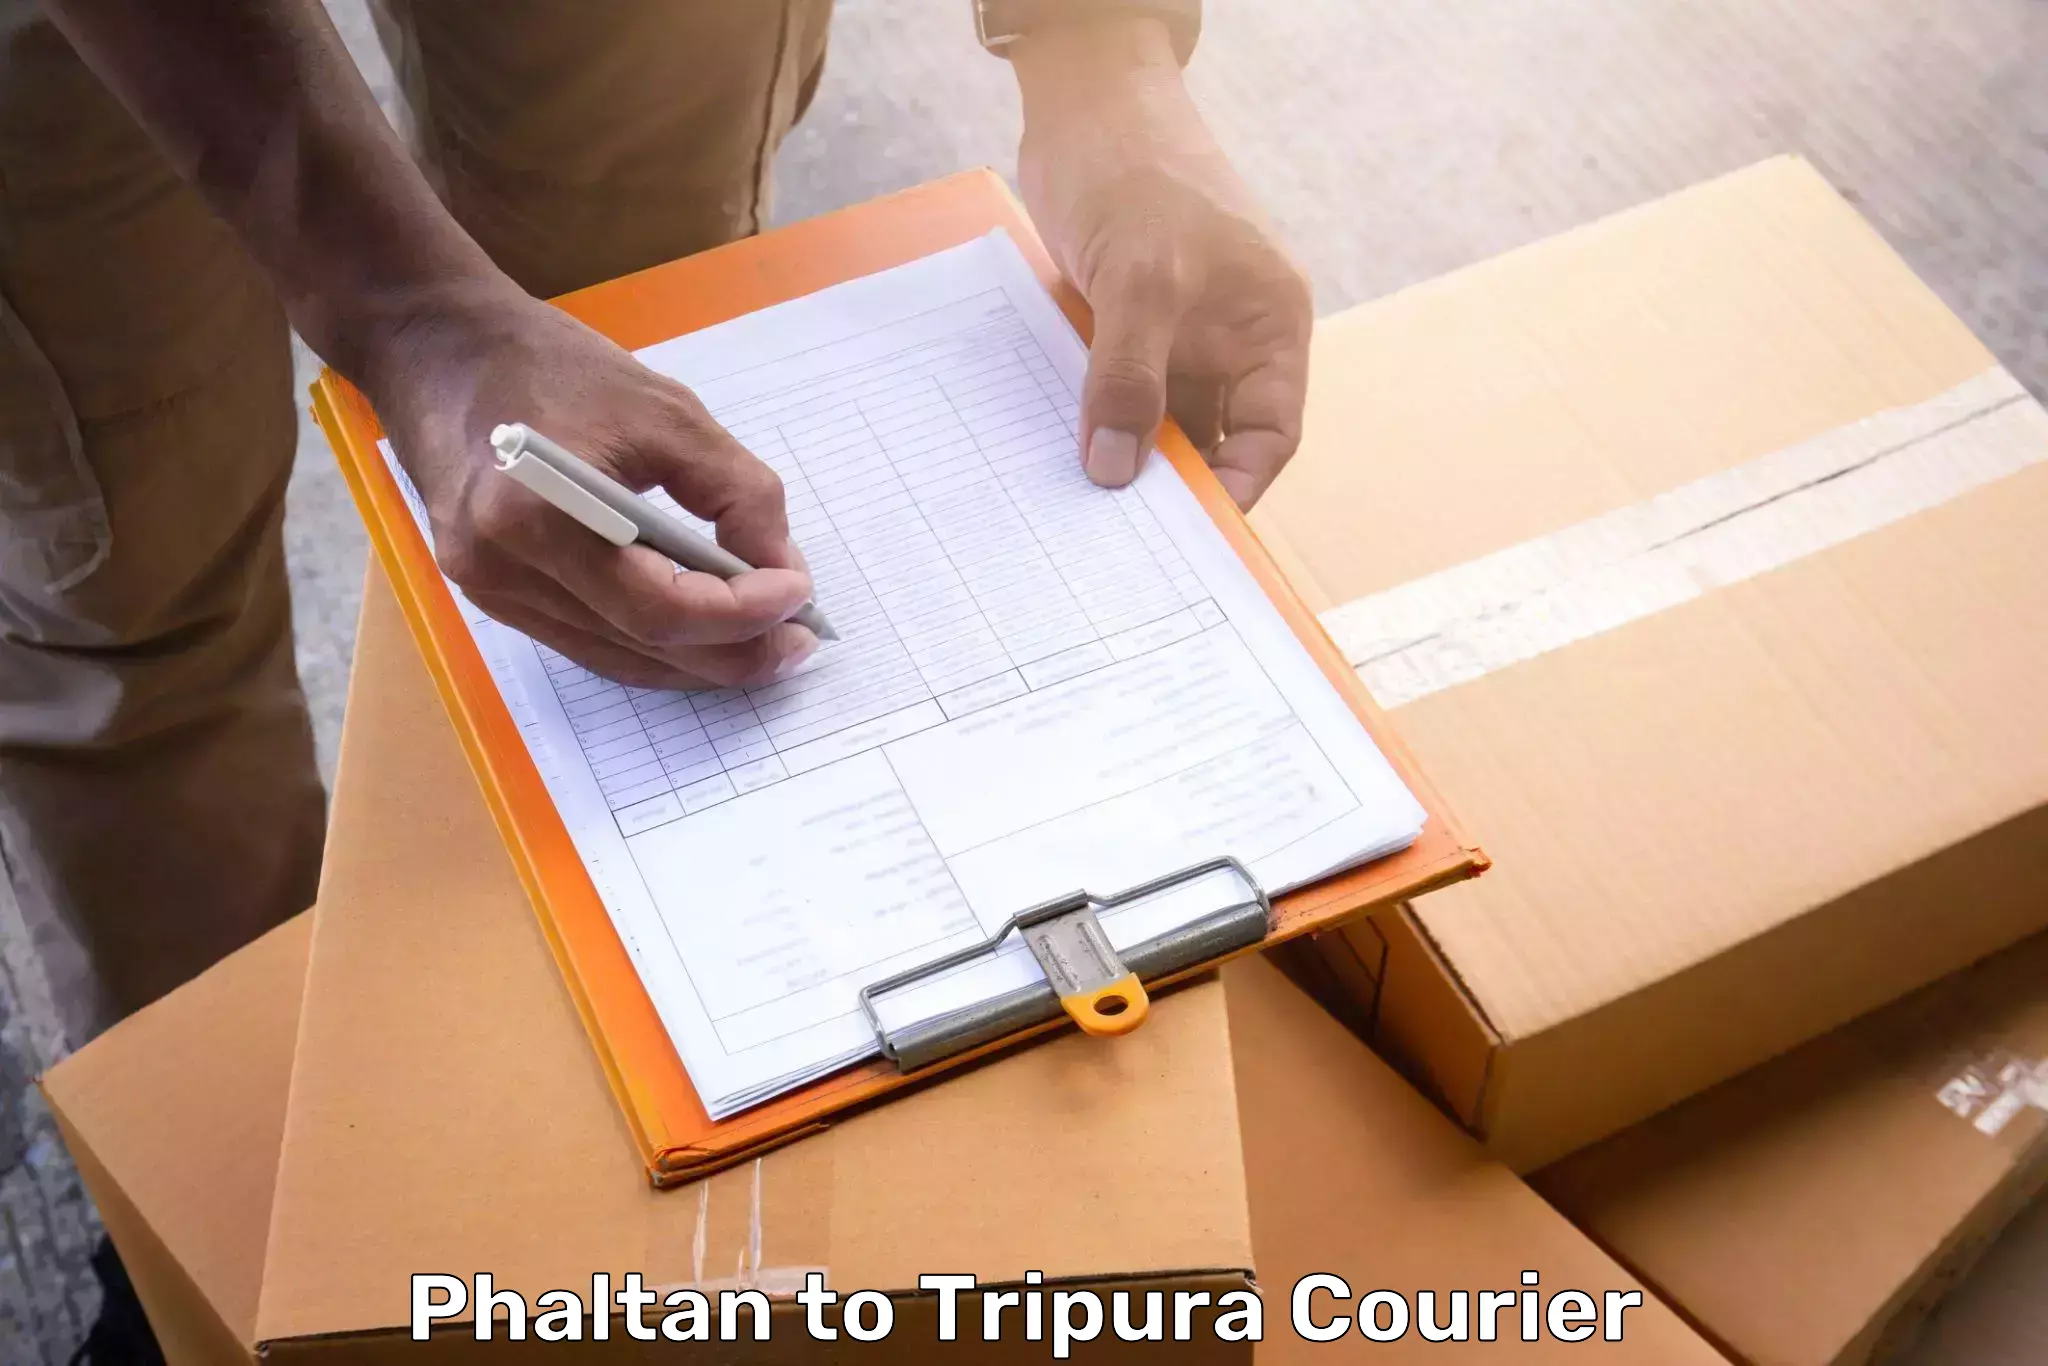 Emergency baggage service Phaltan to Udaipur Tripura